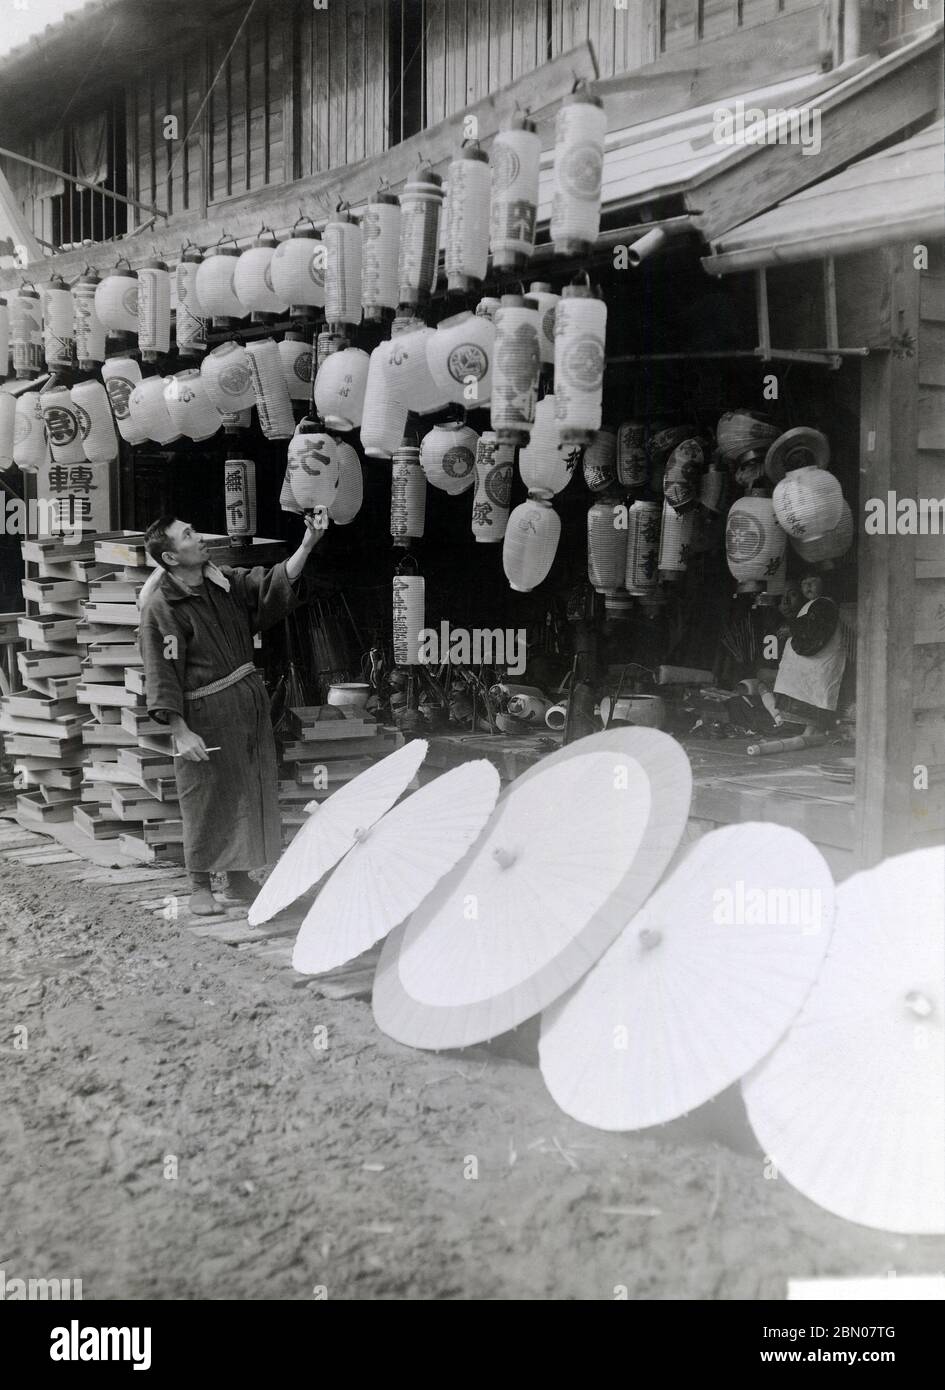 [ 1920 Giappone - Lanterna giapponese e Parasol Store ] - Negozio che vende lanterne e ombrelloni di carta. Poiché entrambi erano fatti di carta, sono stati prodotti solitamente nello stesso laboratorio. stampa in argento gelatina del xx secolo. Foto Stock